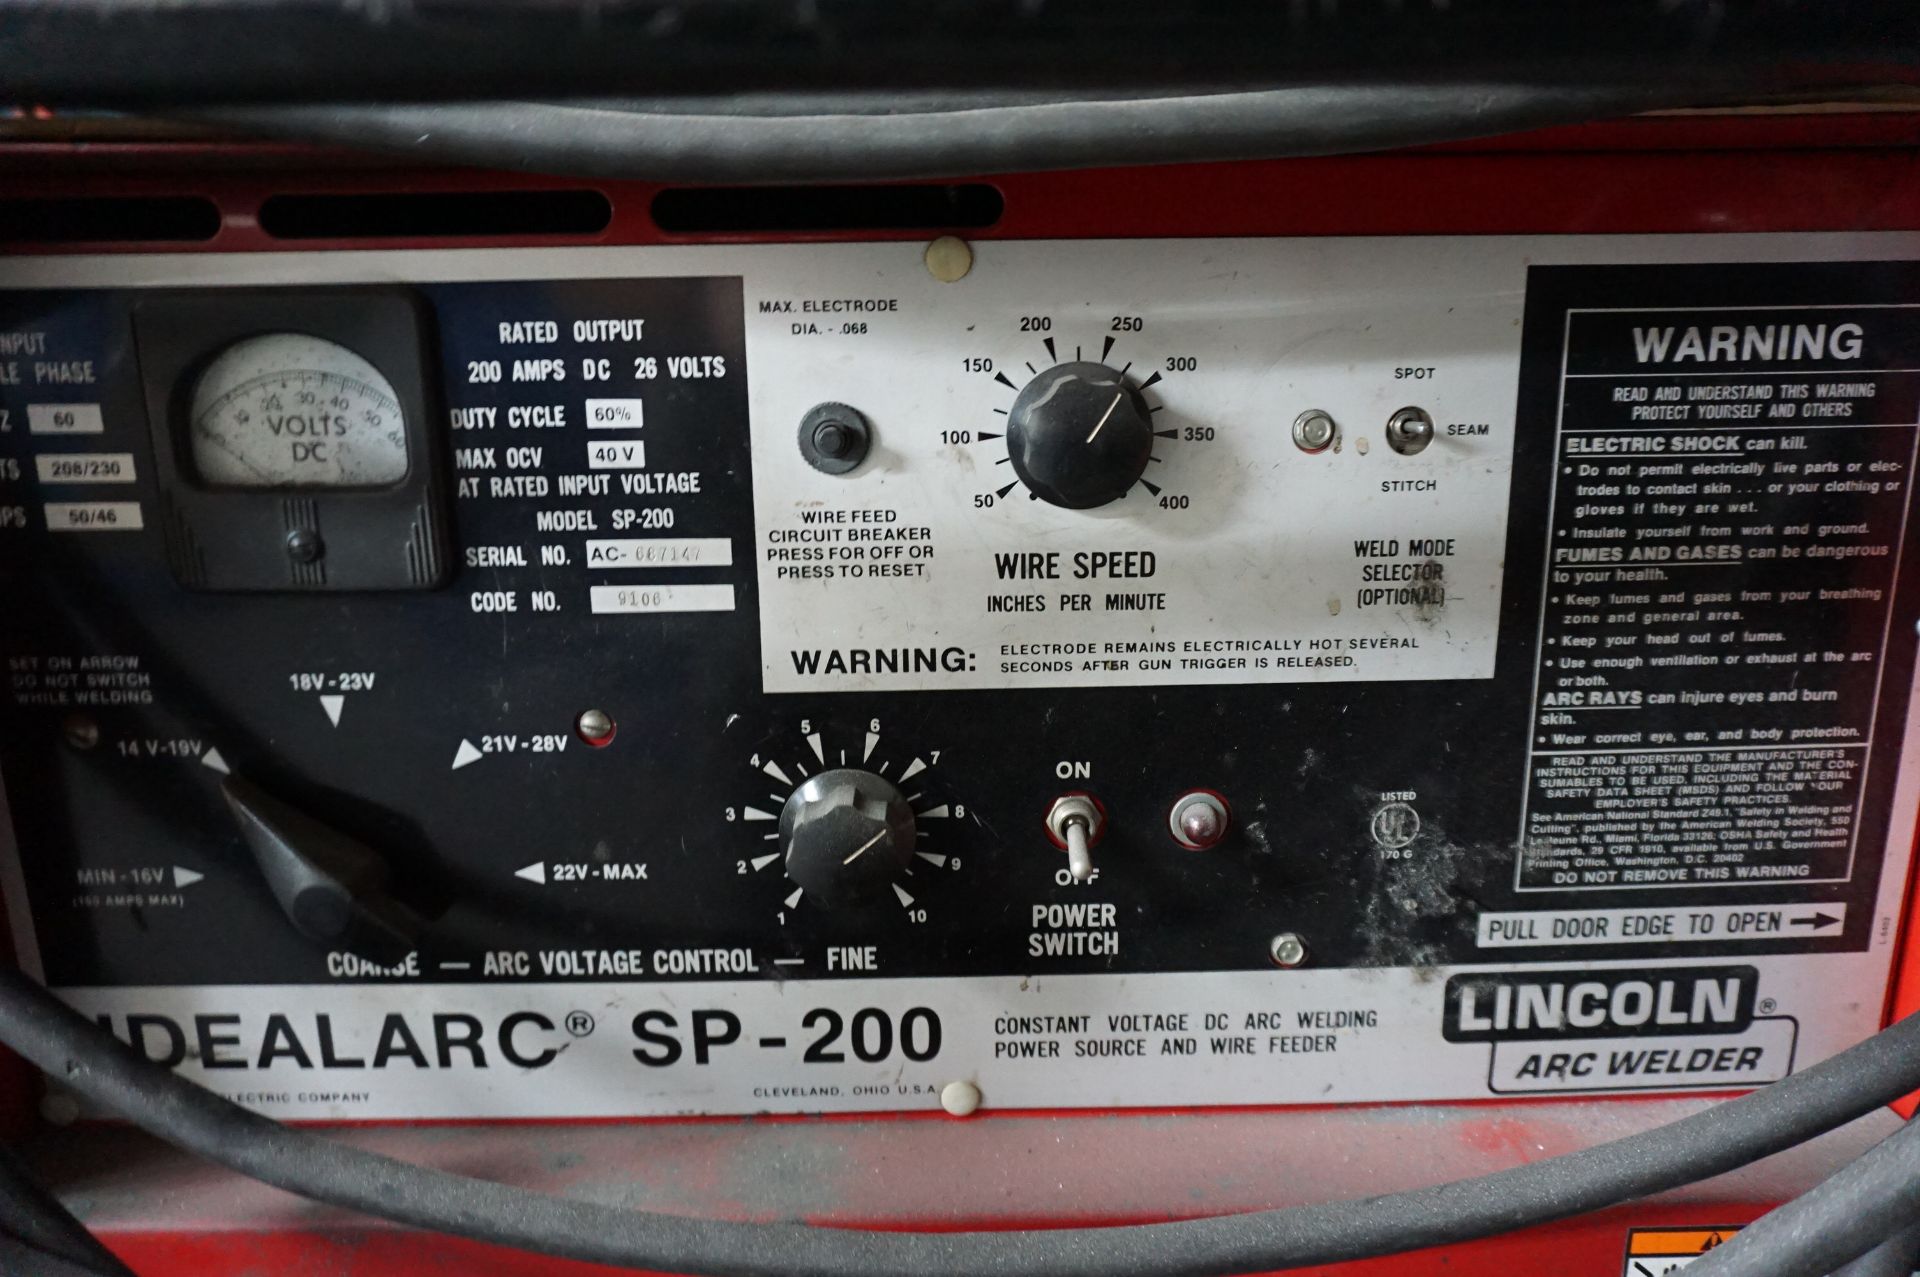 LINCOLN ARC WELDER IDEALARC SP-200 MIG WELDER, S/N AC-687147, CODE 9106 WITH REGULATOR AND WELD - Image 2 of 4